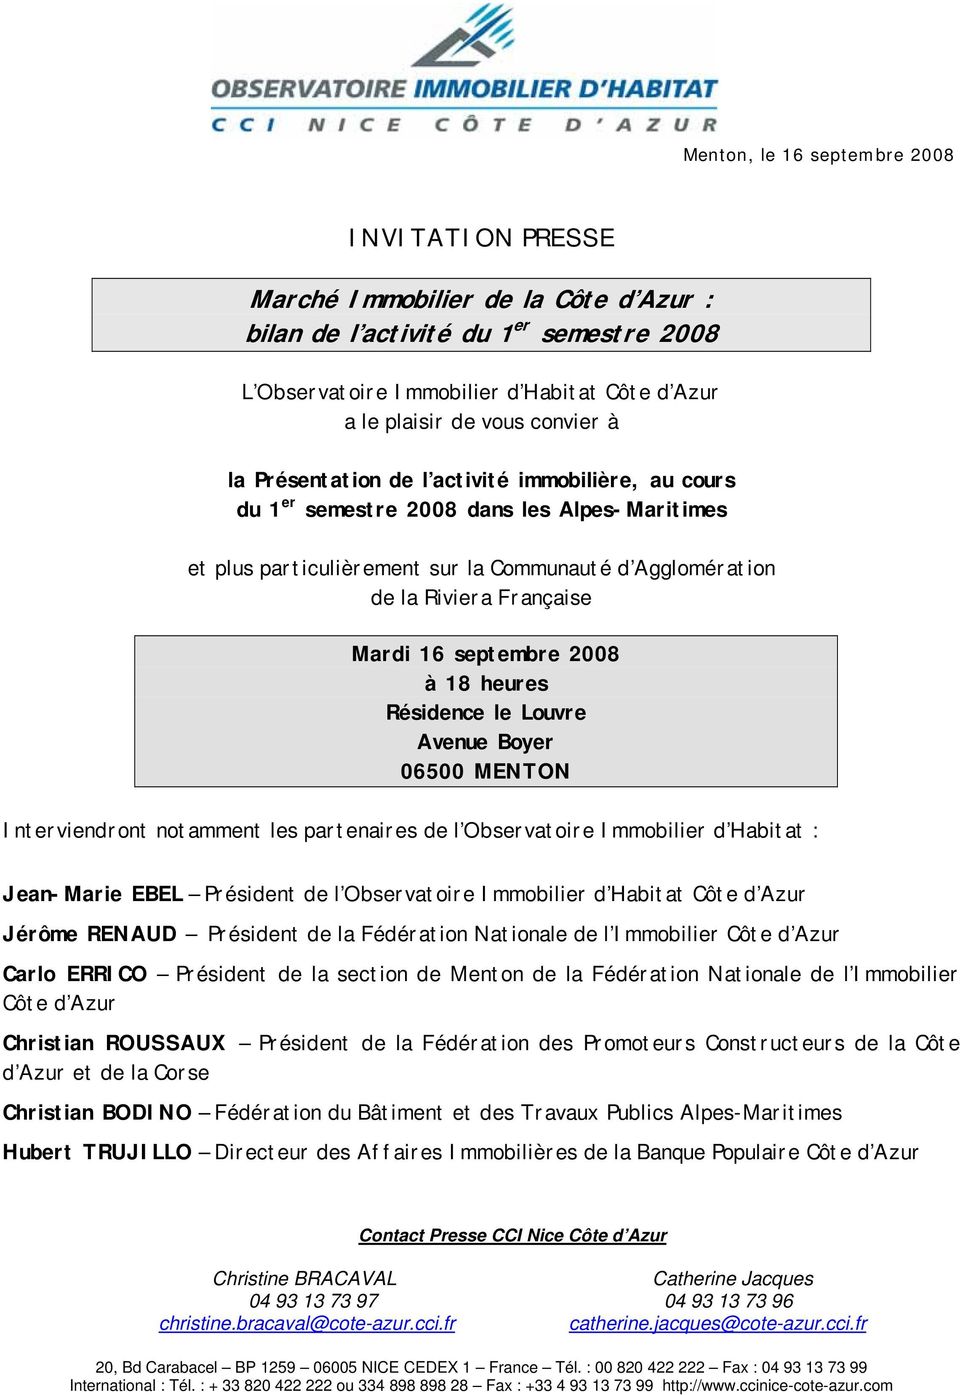 16 septembre 2008 à 18 heures Résidence le Louvre Avenue Boyer 06500 MENTON Interviendront notamment les partenaires de l Observatoire Immobilier d Habitat : Jean-Marie EBEL Président de l